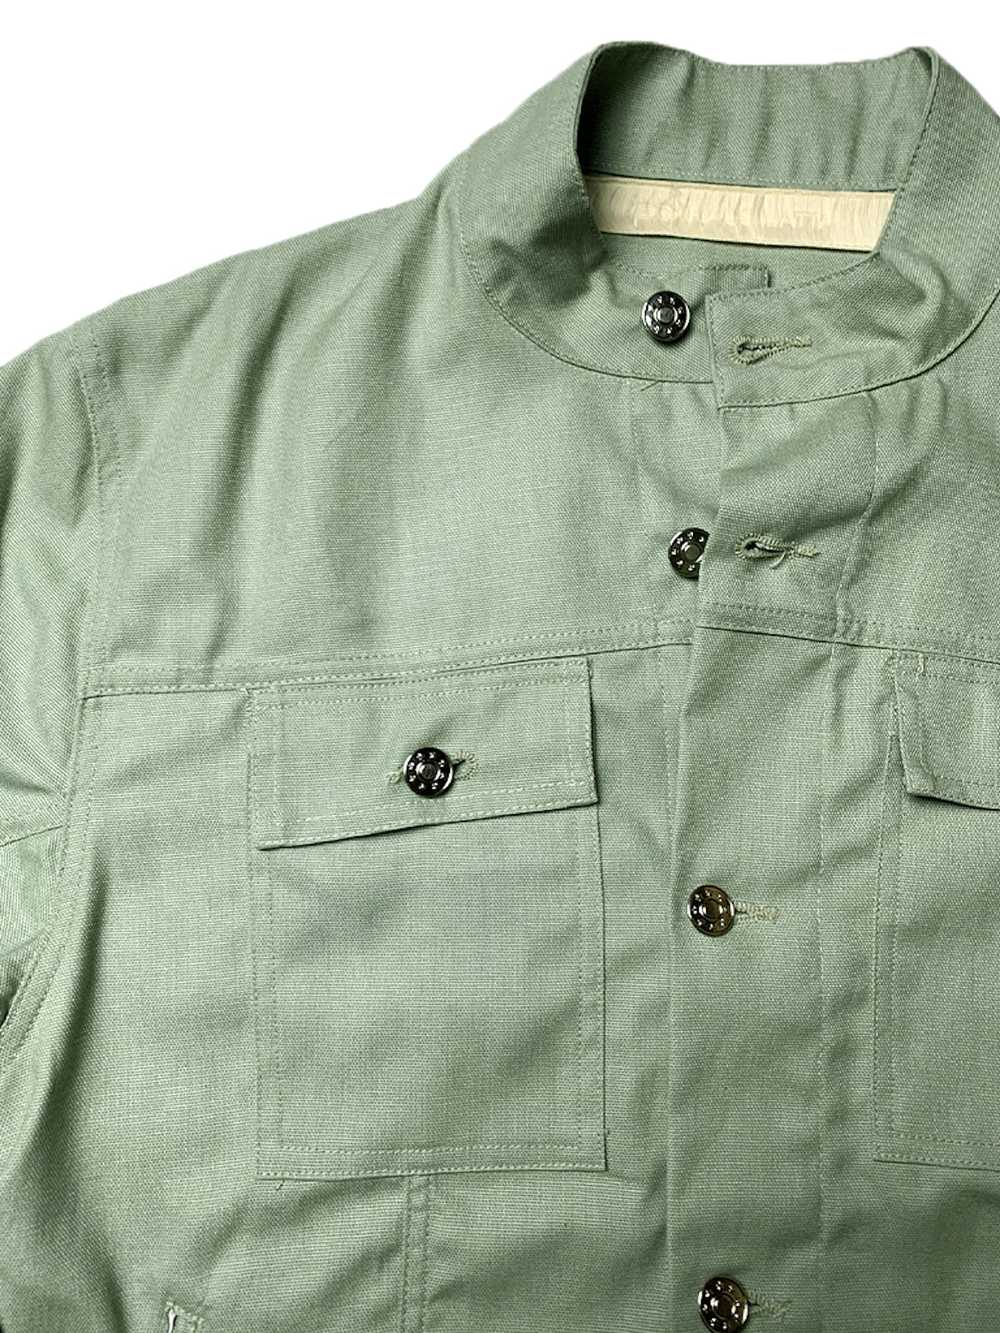 Eckhaus Latta Sage Green Military Shirt Jacket - image 2